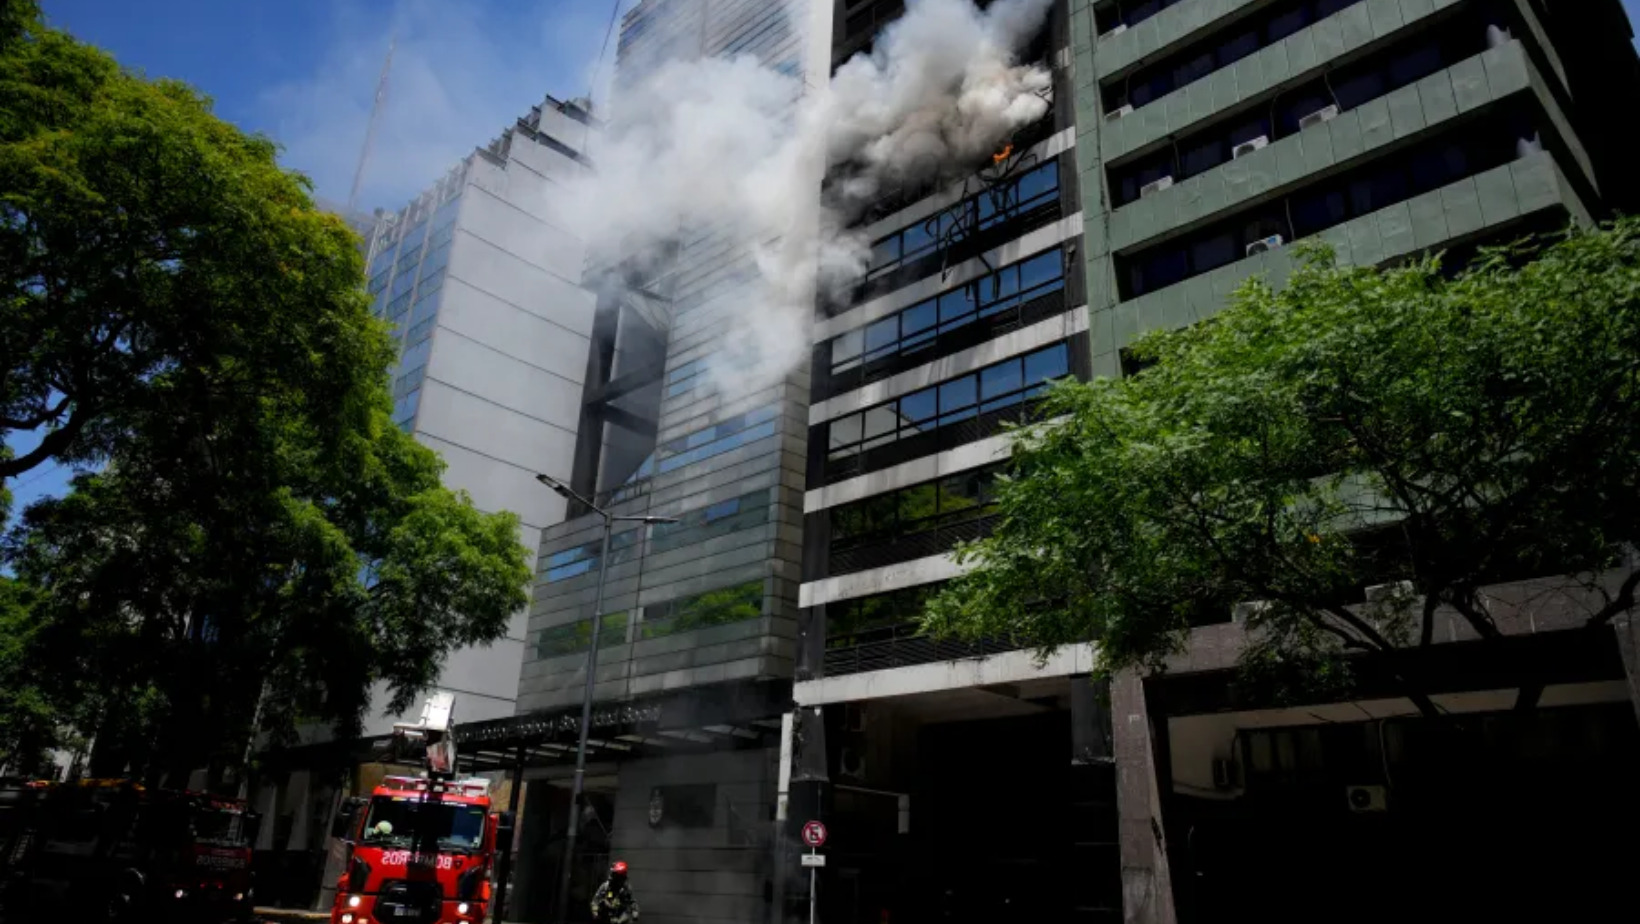 Los bomberos intentaron sofocar el fuego que se registró en un edificio de oficinas y viviendas particulares, en Buenos Aires. FOTO: Fuente externa